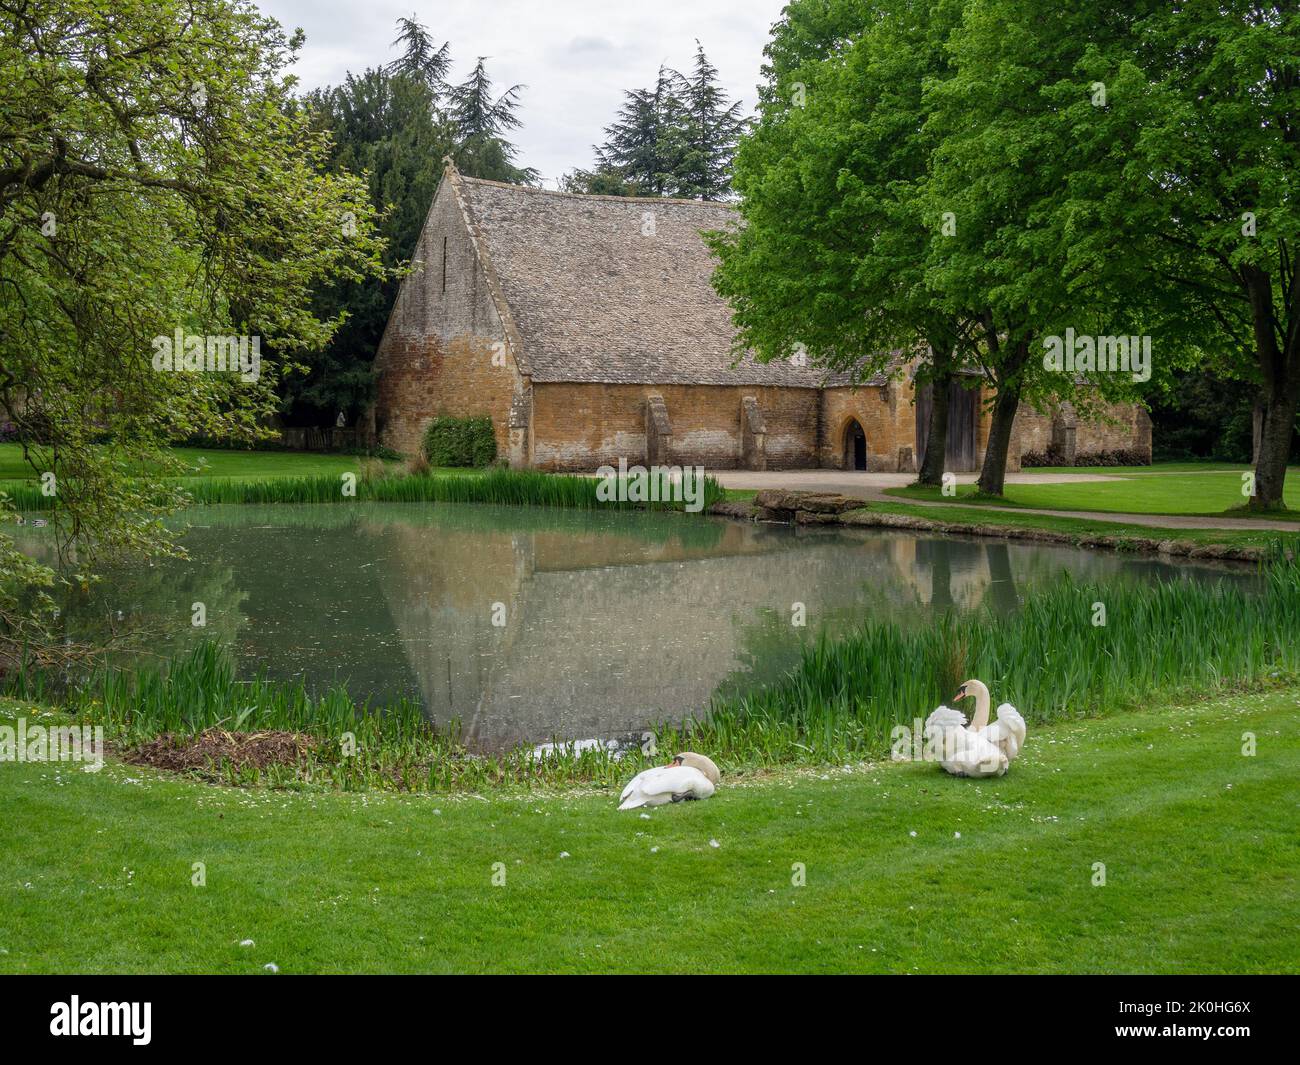 Una vista del granero del diezmo medieval desde el estanque de patos, Stanway House, Gloucestershire, Reino Unido; ahora se utiliza como lugar para bodas Foto de stock